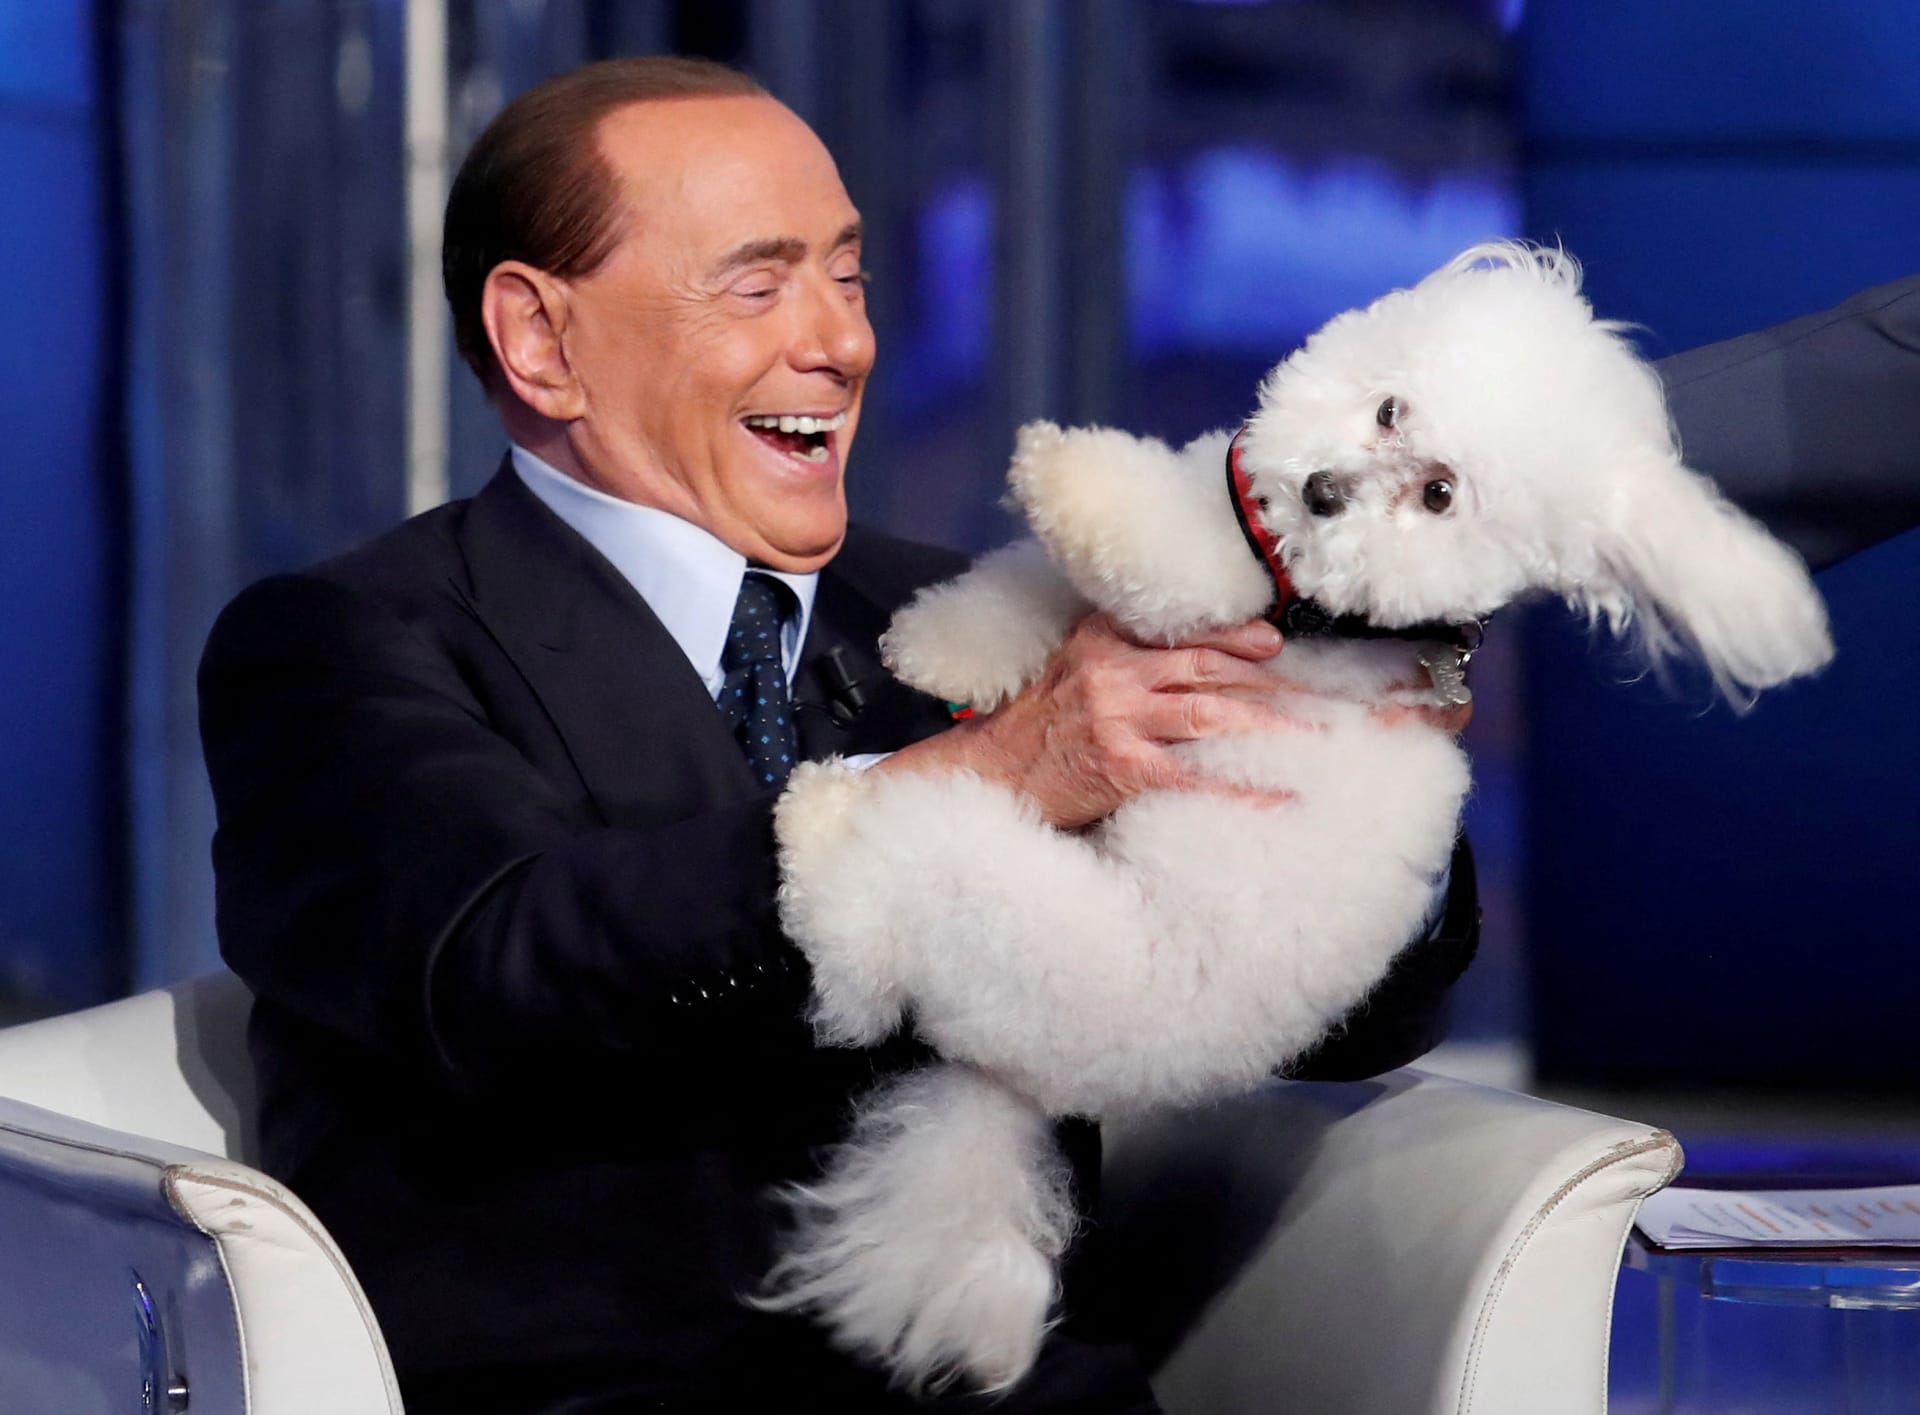 Berlusconi war häufig Gast in italienischen TV-Sendungen und bekannt für populistische Sprüche. Er ließ sich von seinen Anhängern gerne als "Cavaliere" anreden ("Ritter"). Hier spielt er 2017 mit einem Hund in einem TV-Studio.